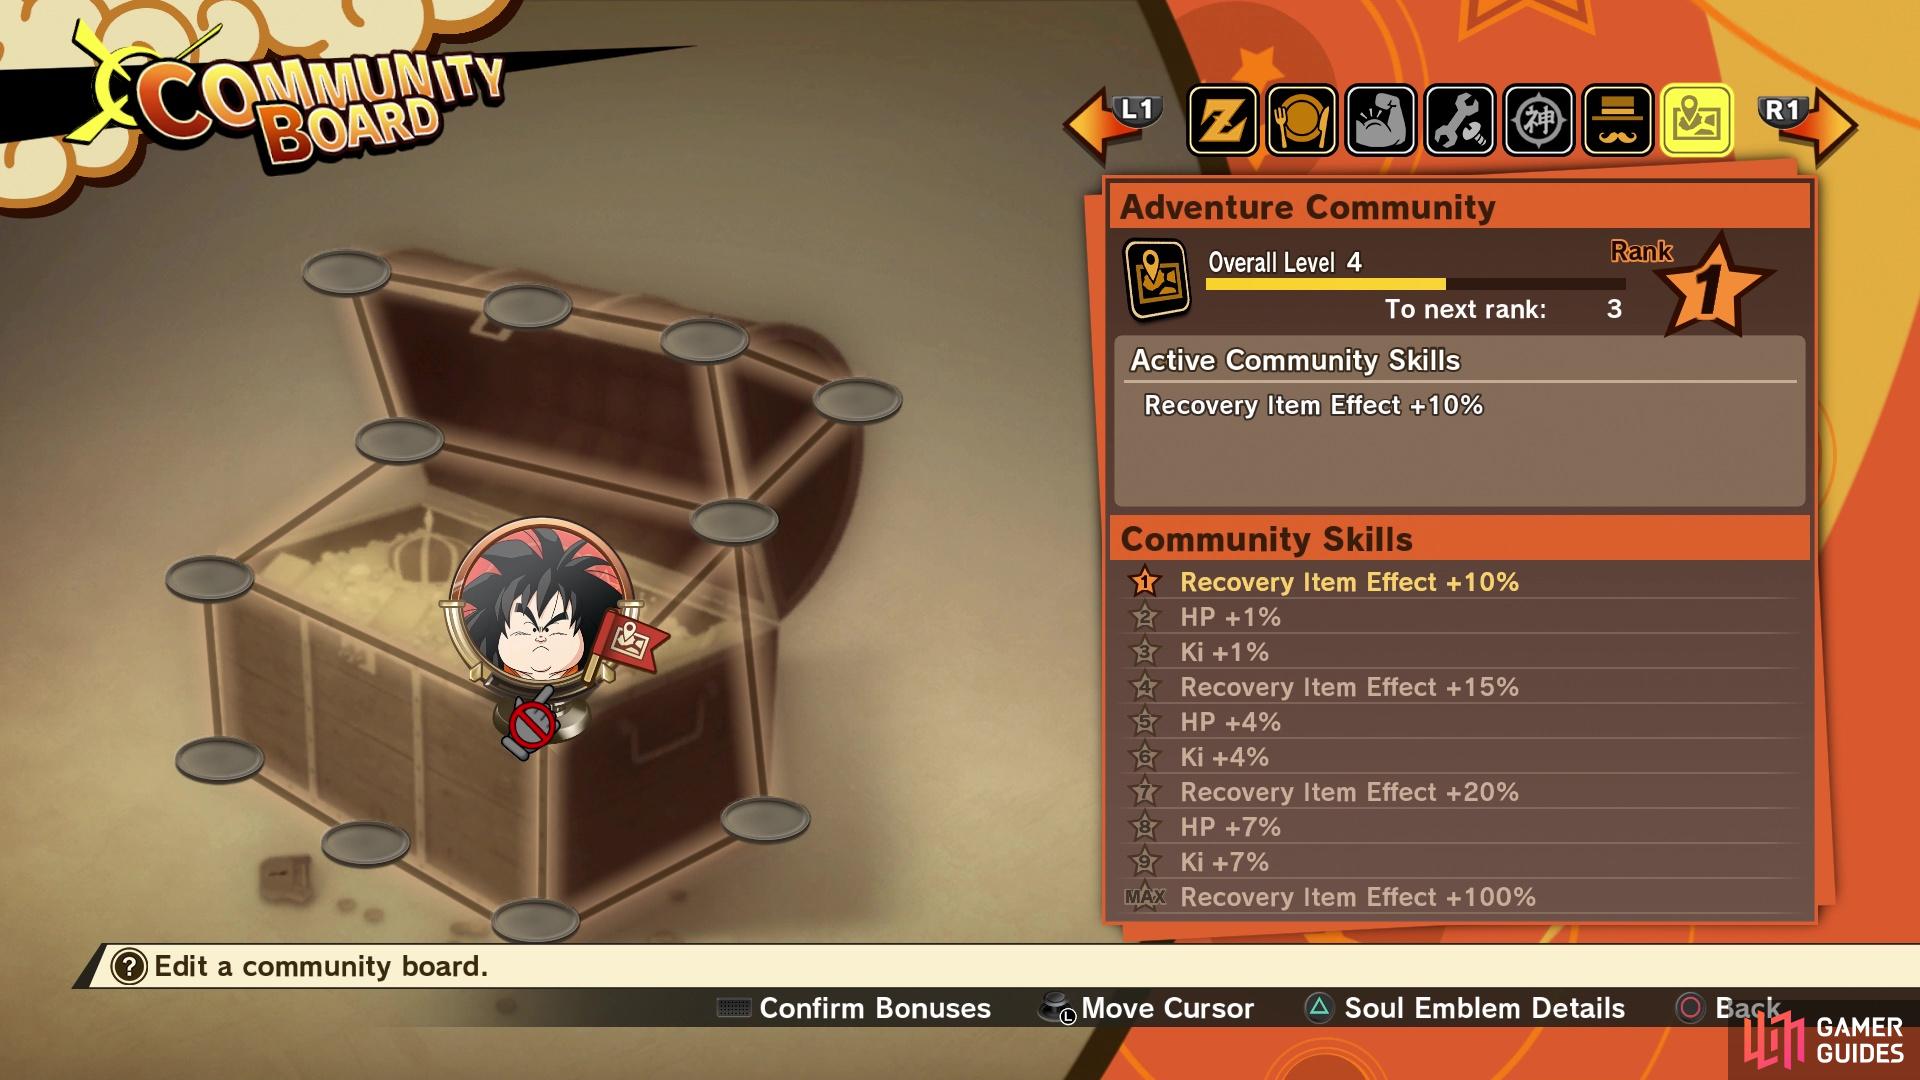 Yajirobe's Soul Emblem unlocks the Adventure Community Board